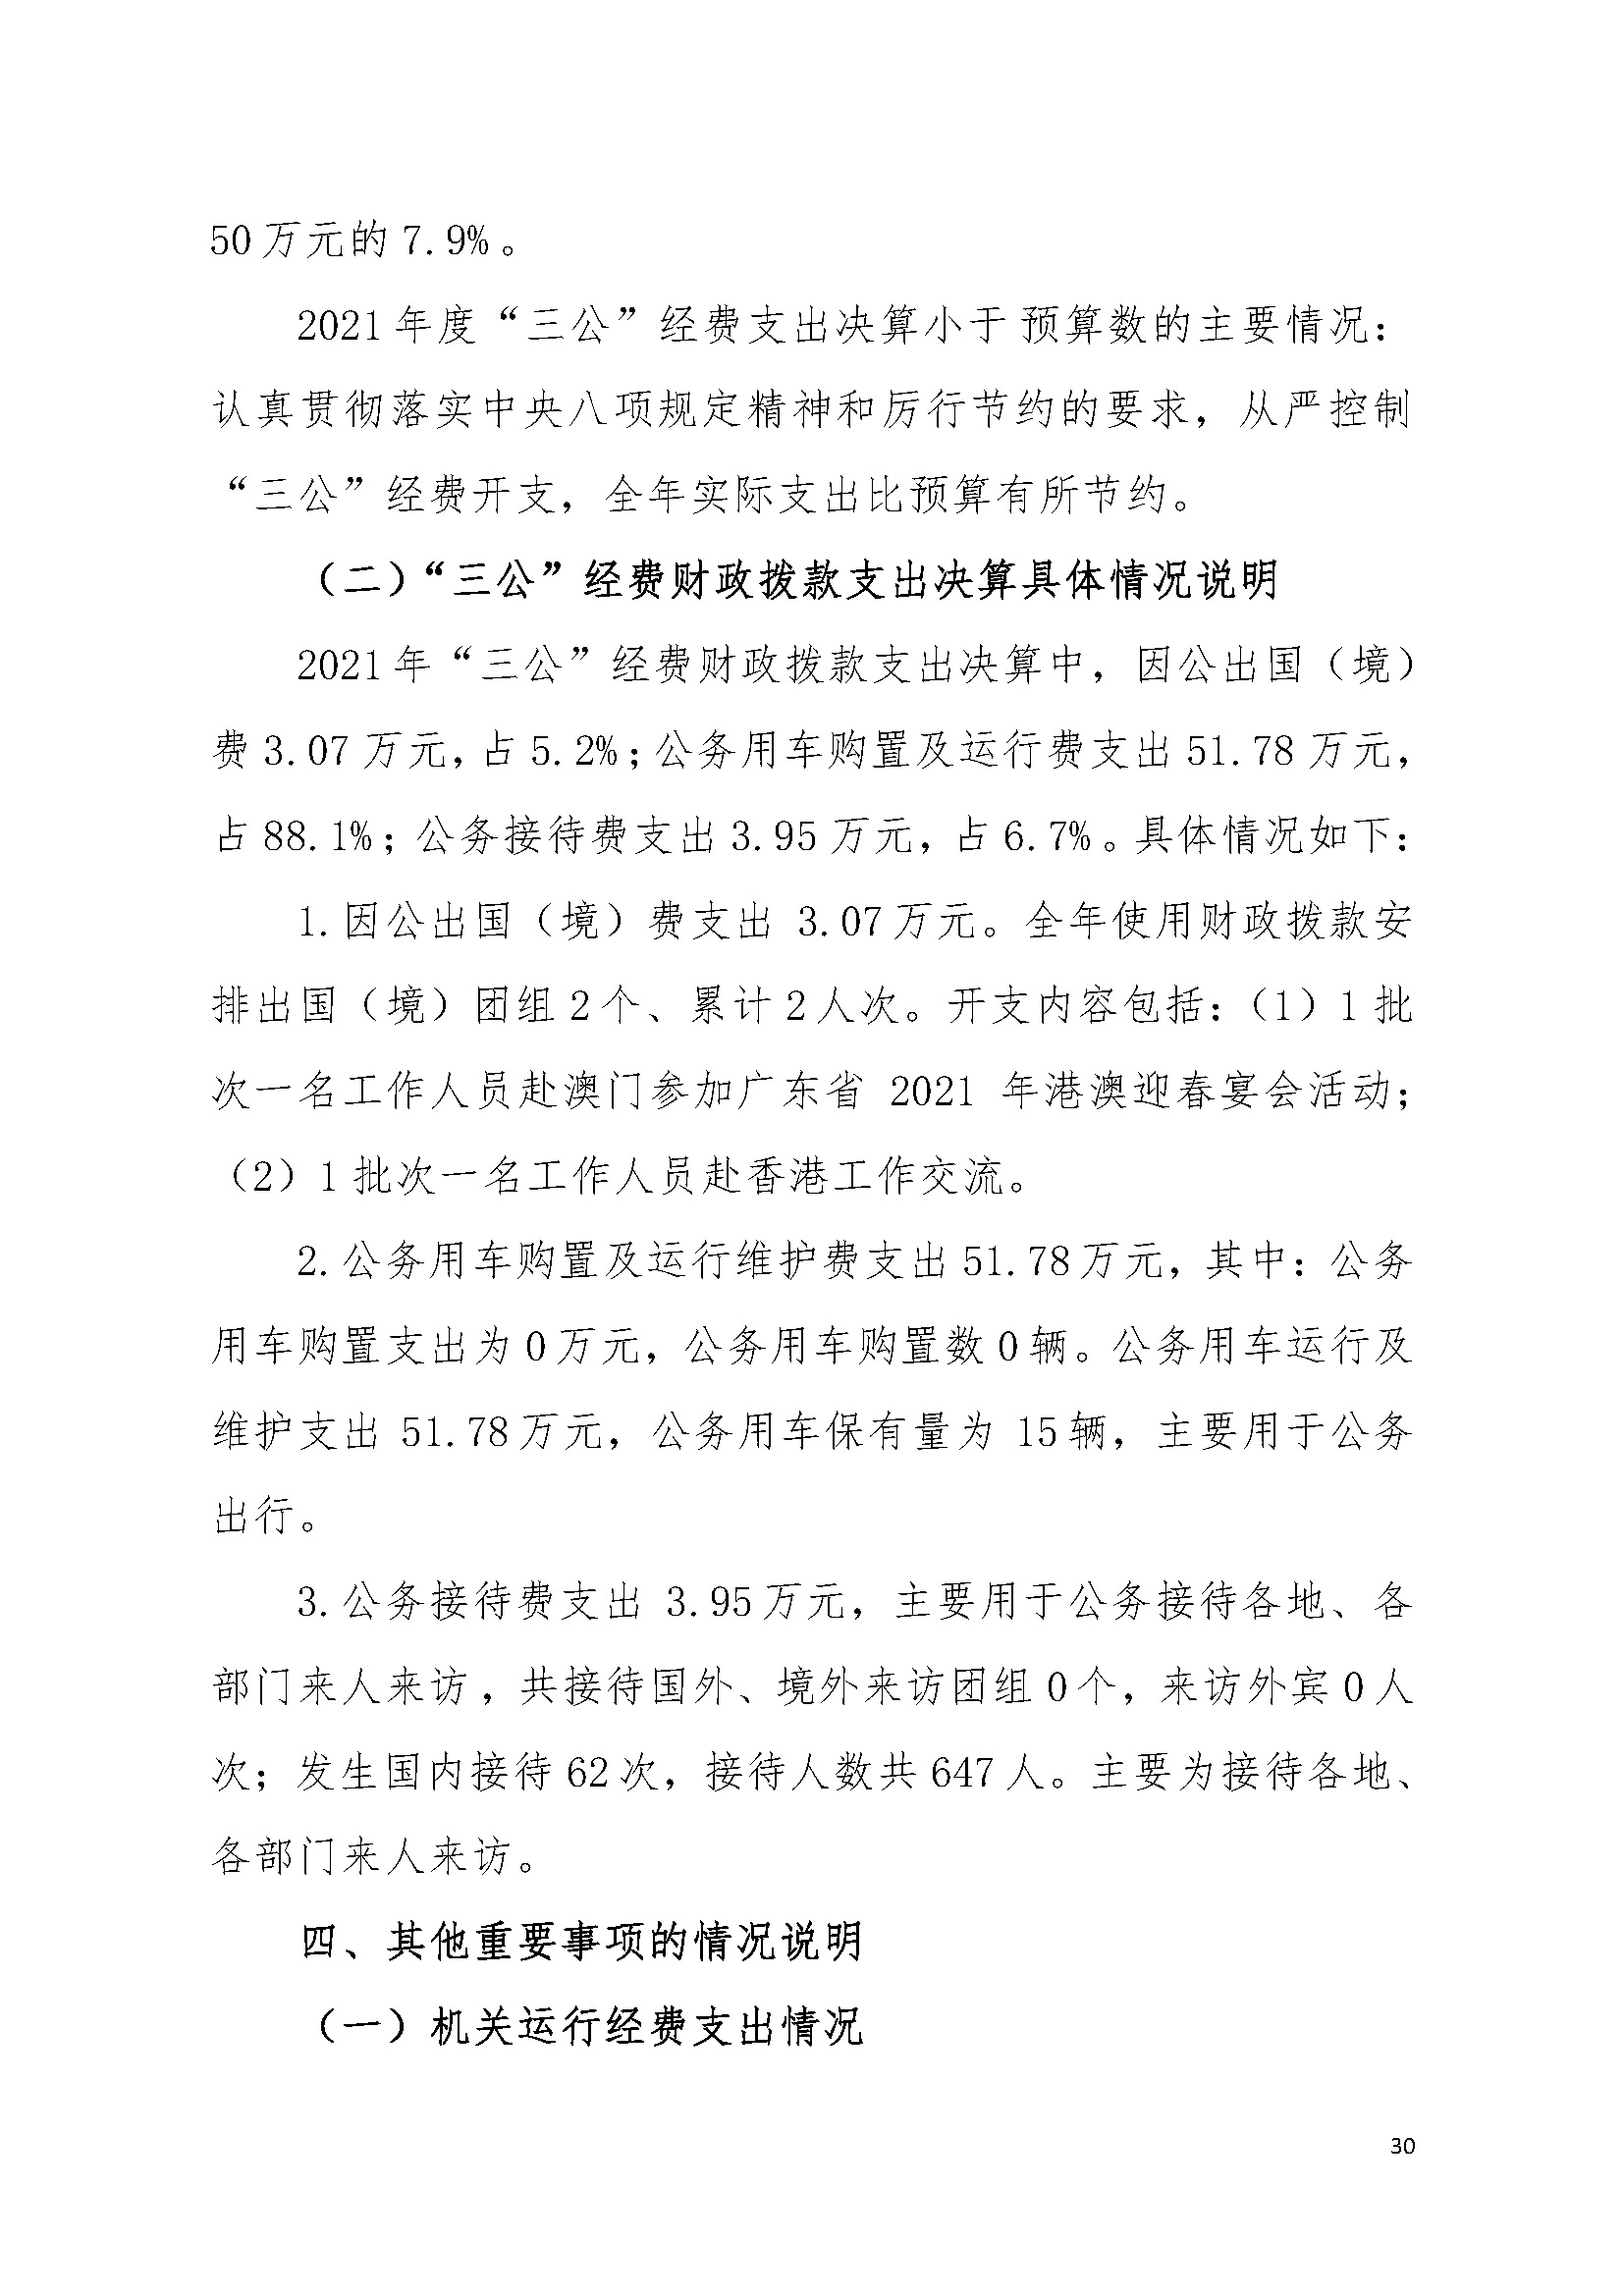 2021年广东省司法厅部门决算 _页面_30.jpg